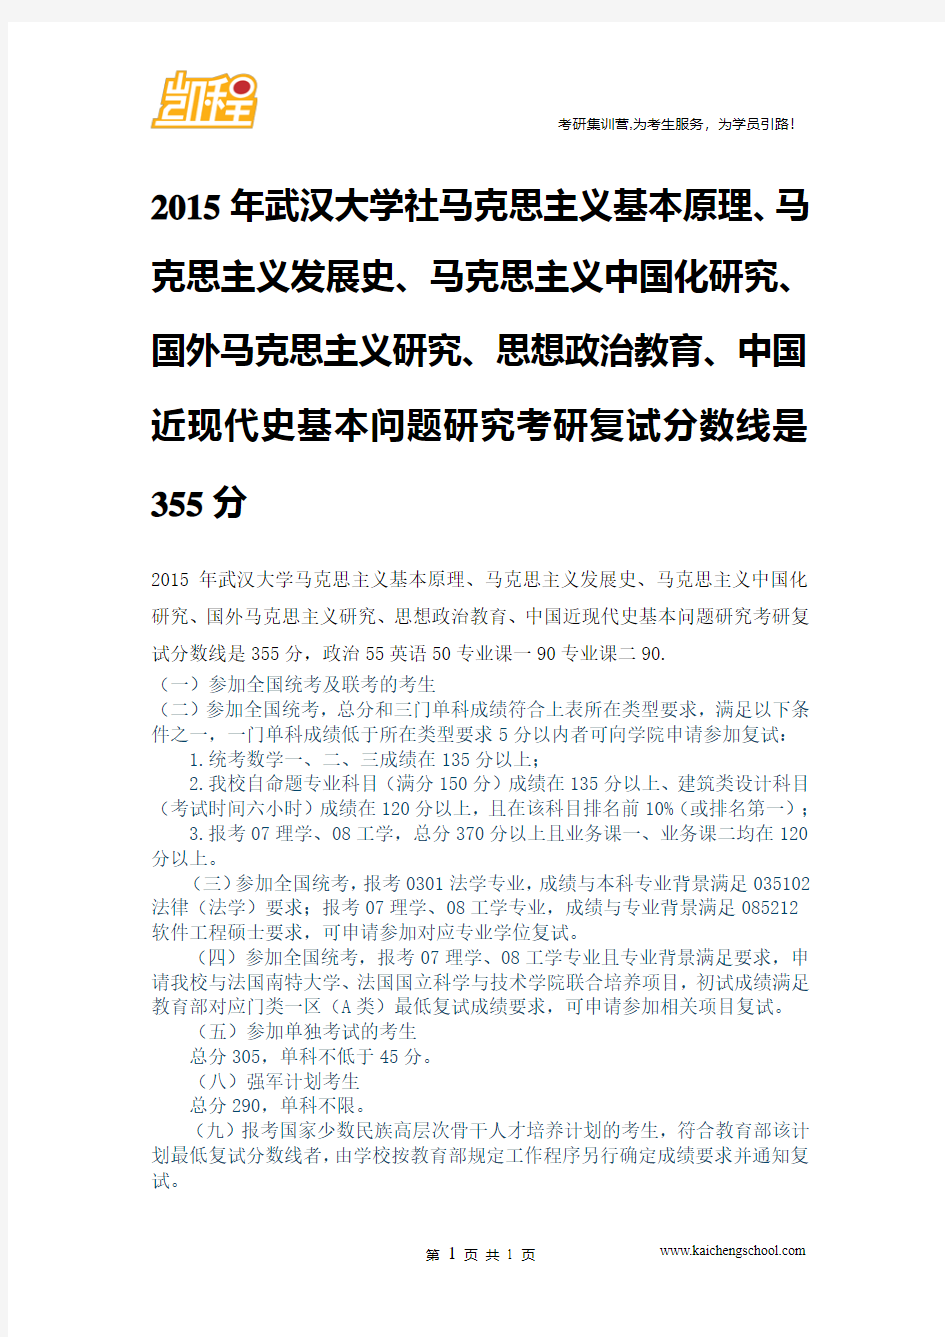 2015年武汉大学马克思主义基本原理、思想政治教育、中国近现代史基本问题研究复试分数线是355分